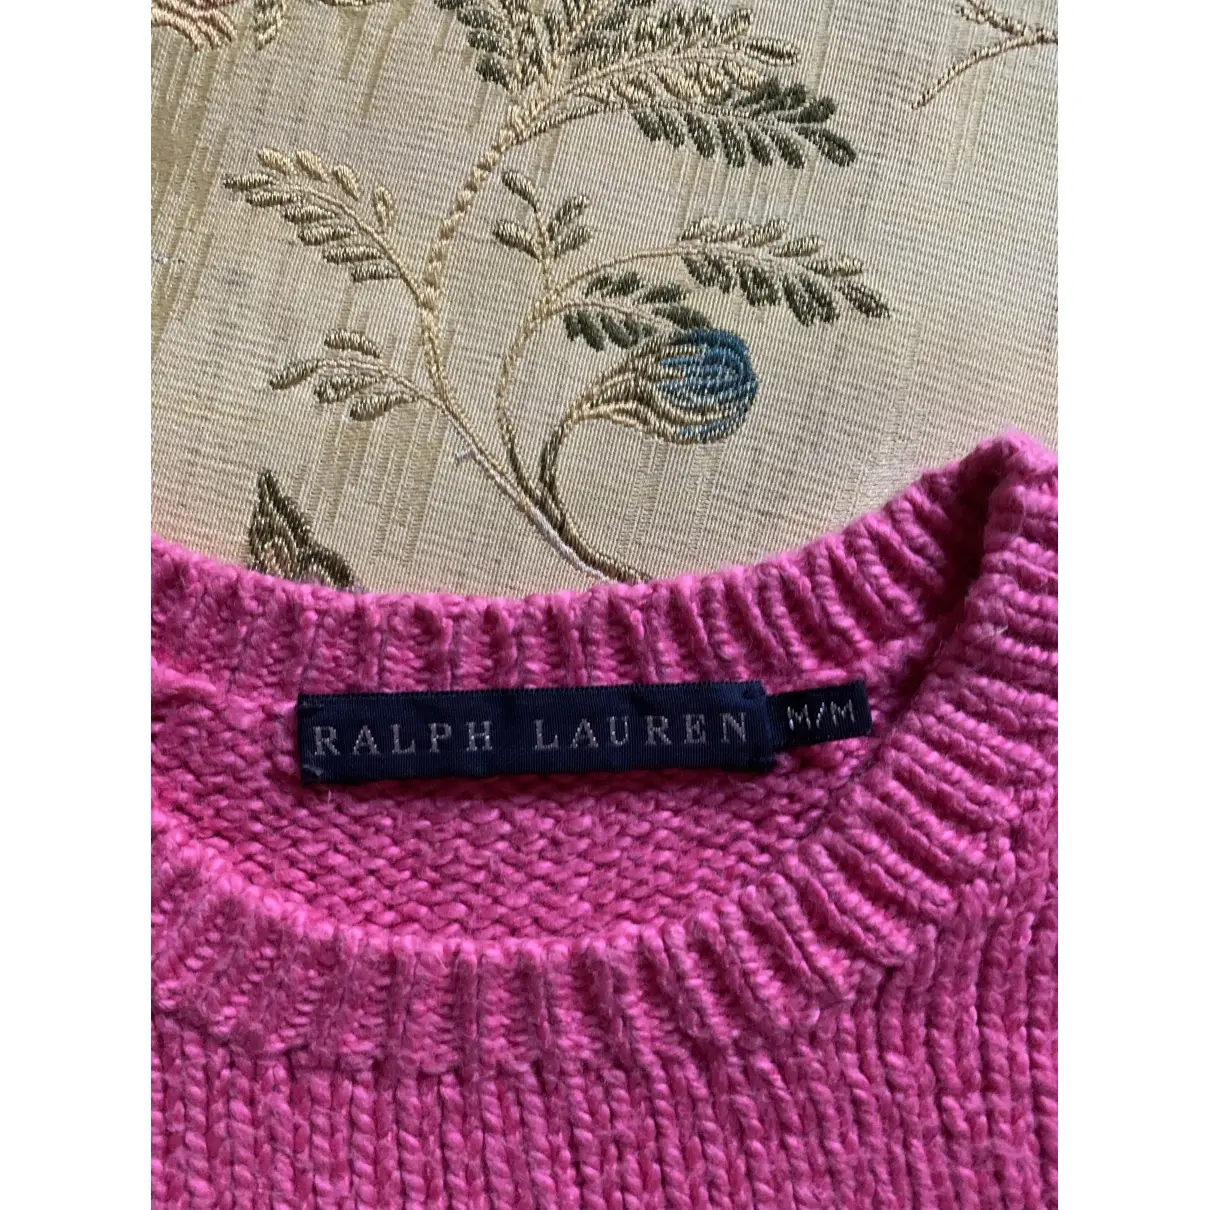 Buy Ralph Lauren Jumper online